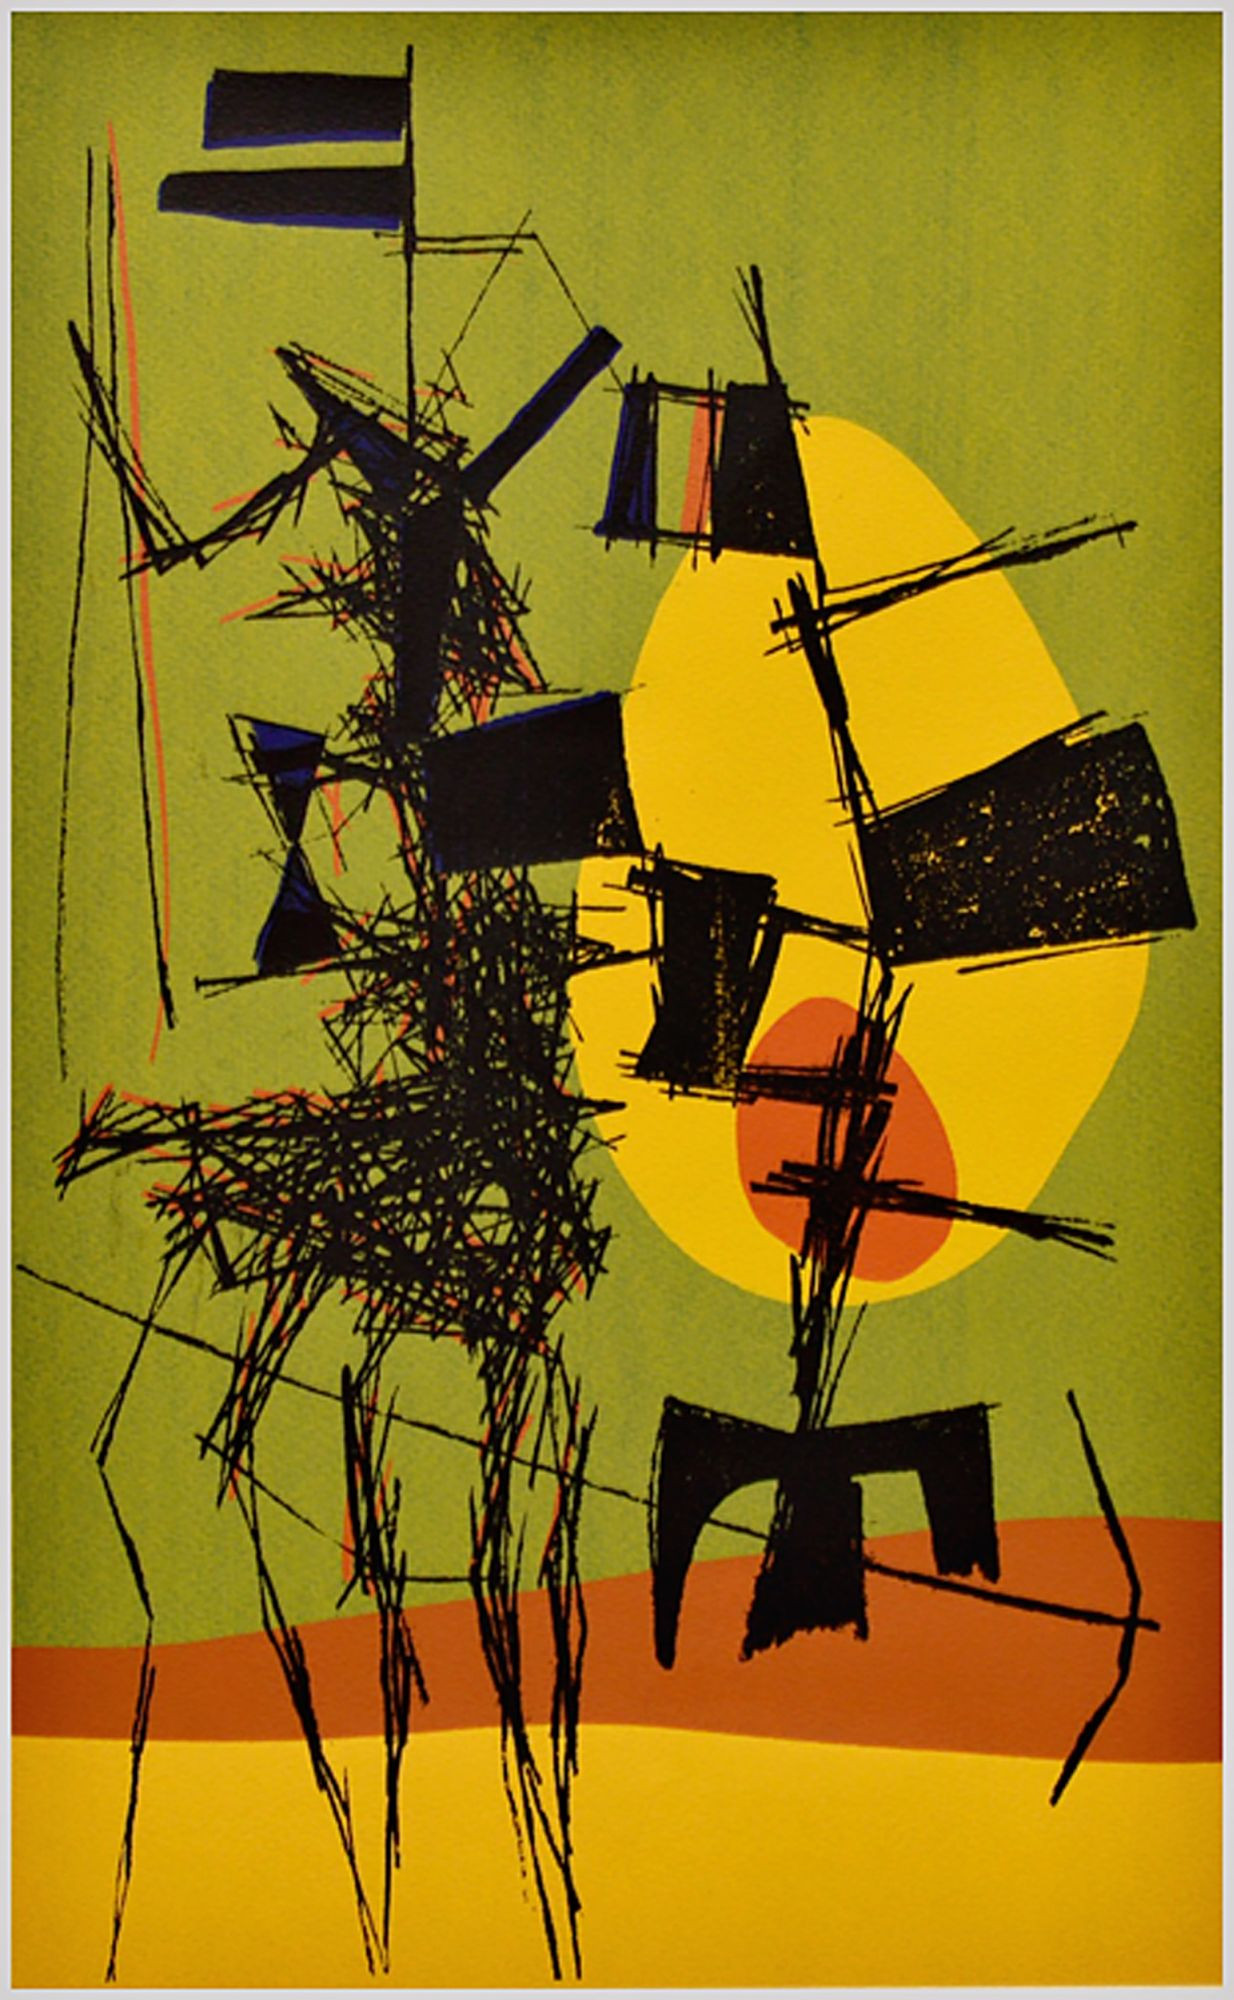 A Don Quijote és Sancho Panza című absztrakt olajfestmény 1950-ben készült